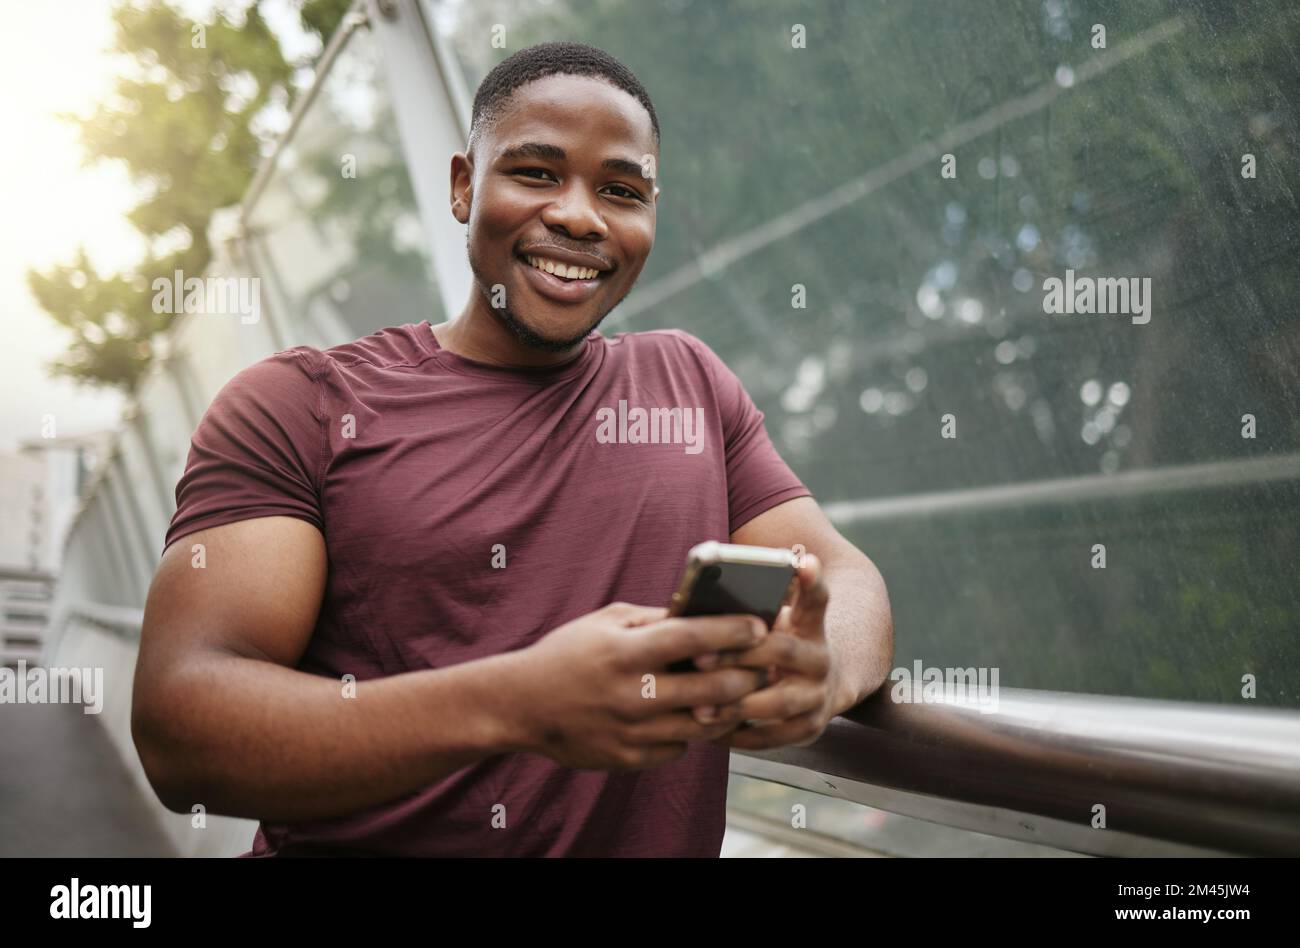 Smartphone, Fitness und schwarzer Mann im Porträt für Wellness-Website, Blog-Tipps Update oder soziale Netzwerke seine Trainingsergebnisse. Sportläufer oder Stockfoto